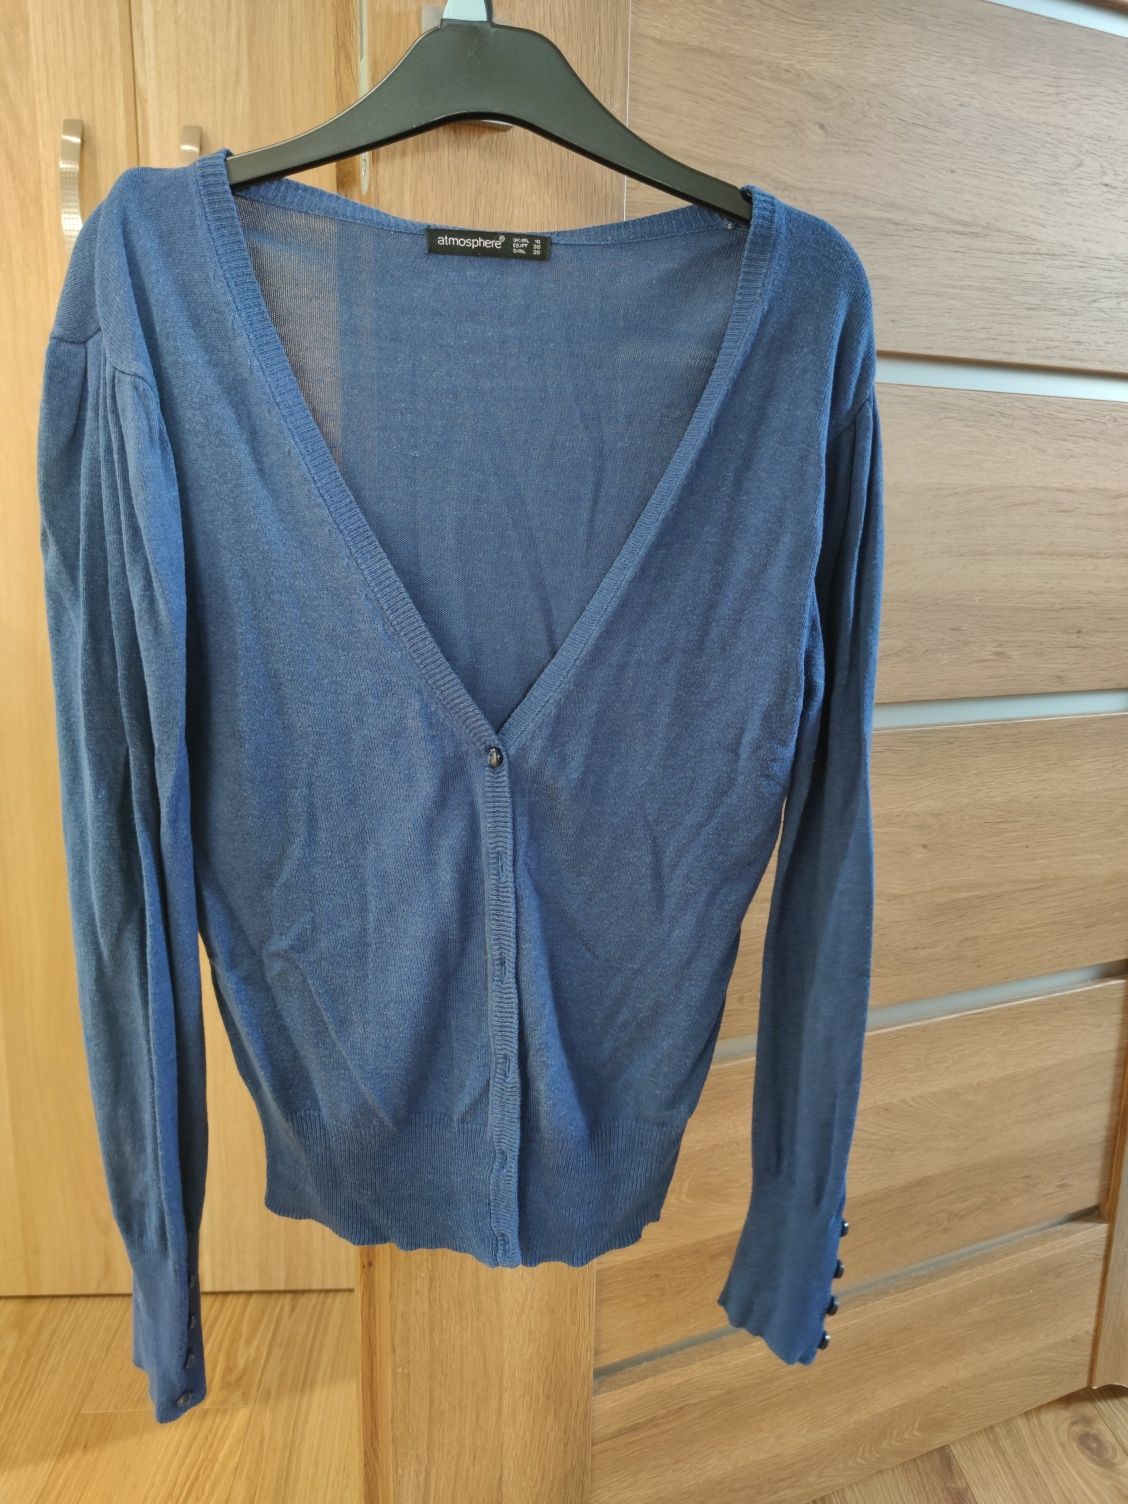 Paczka ubrań damskich M, spodnie, sweter, bluzka, żakiet